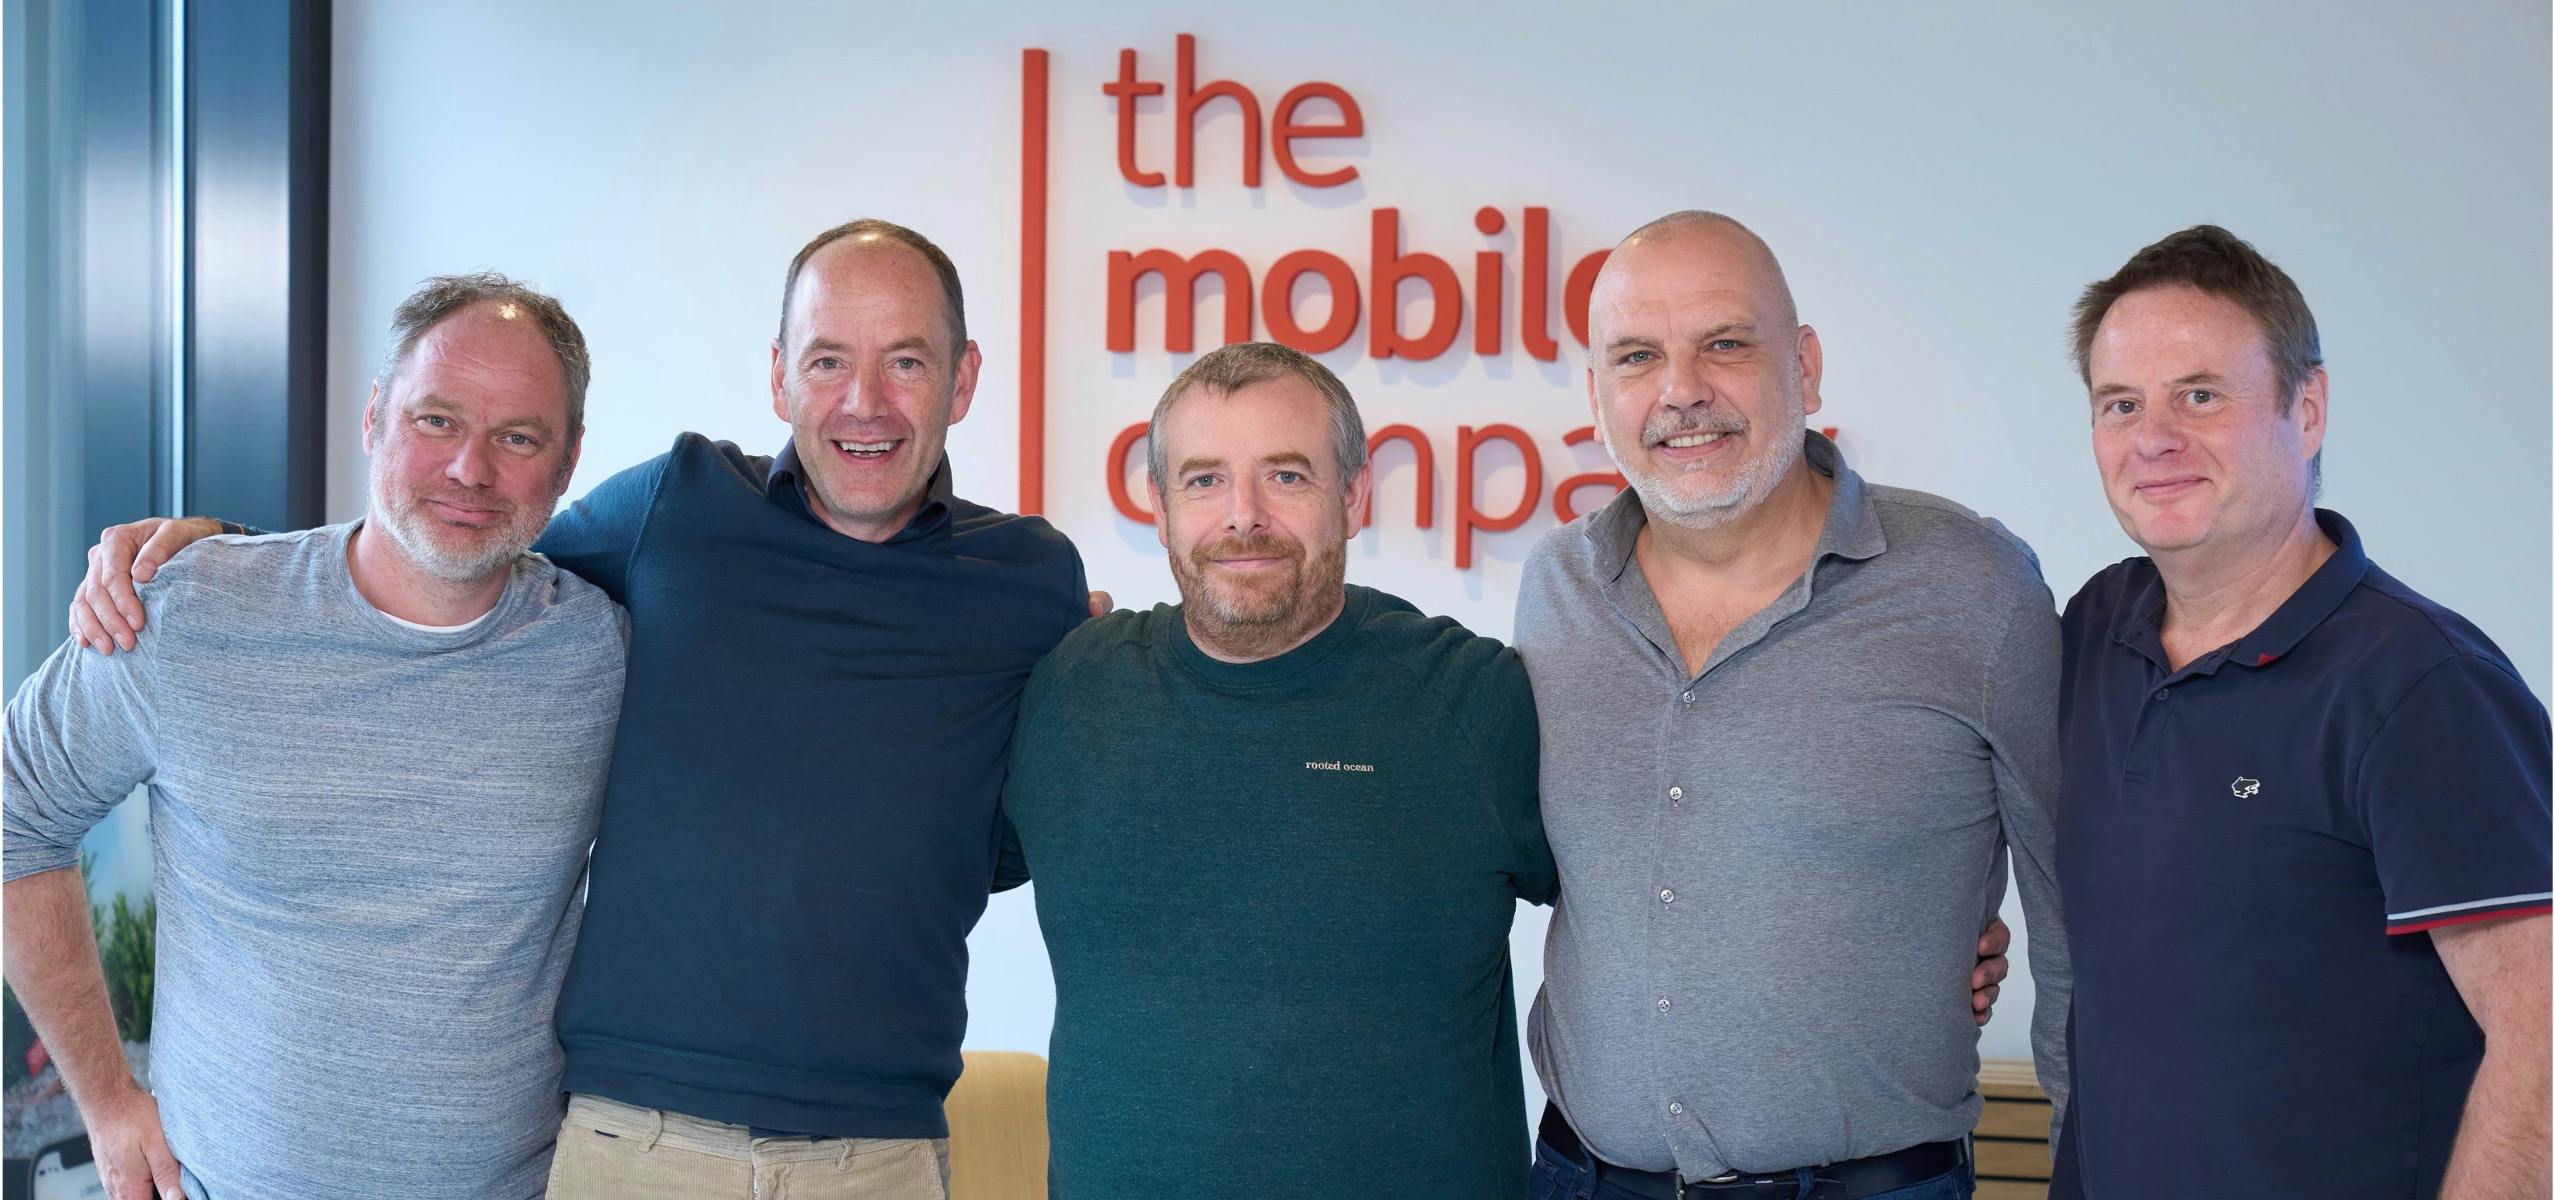 The Mobile Company de grootste mobiele developer van Nederland